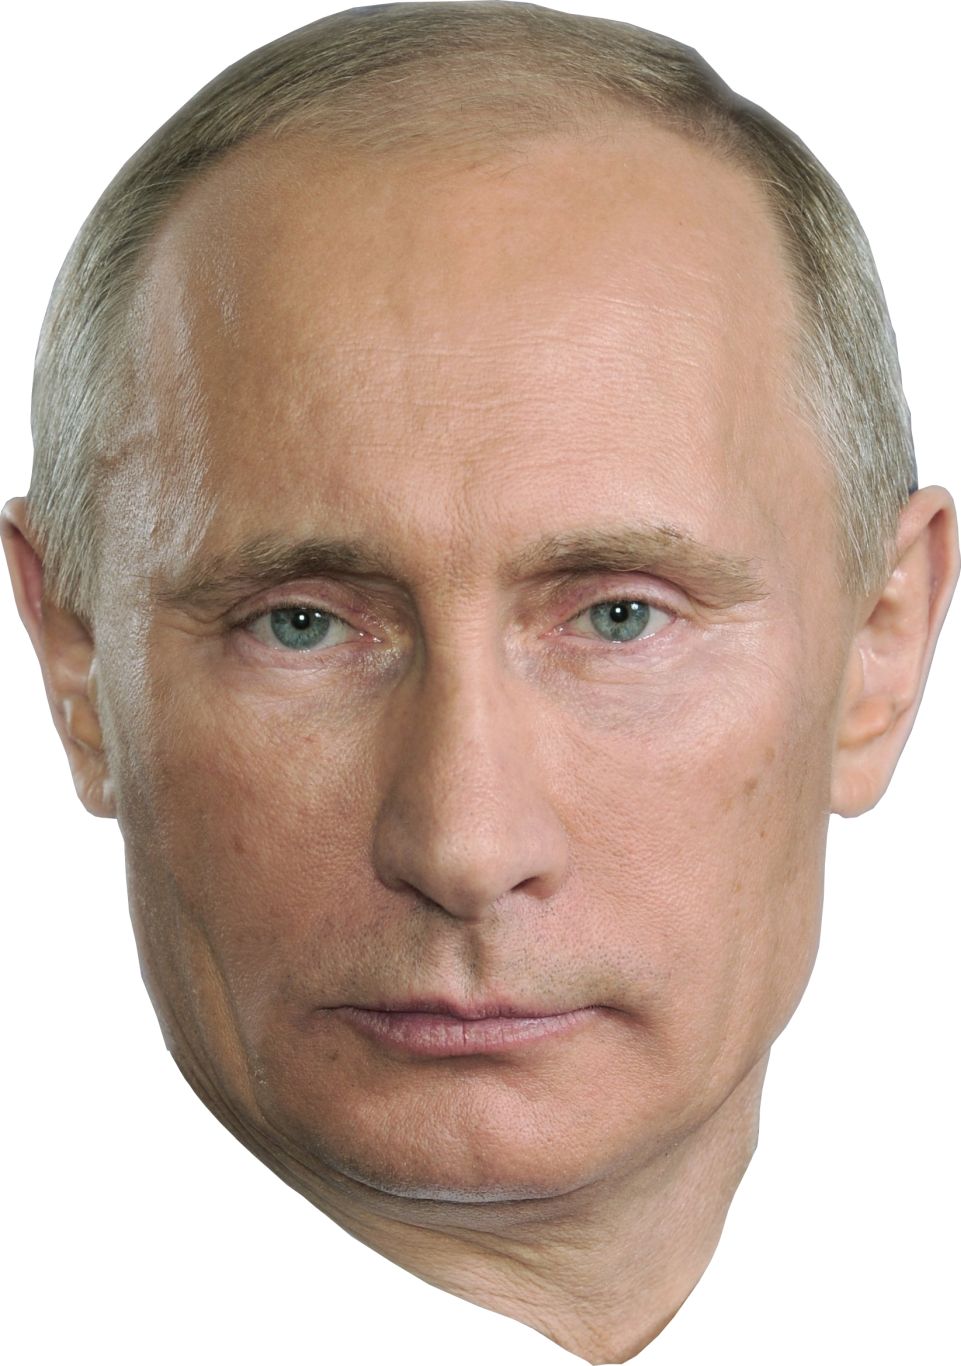 Vladimir Putin face PNG image    图片编号:5669